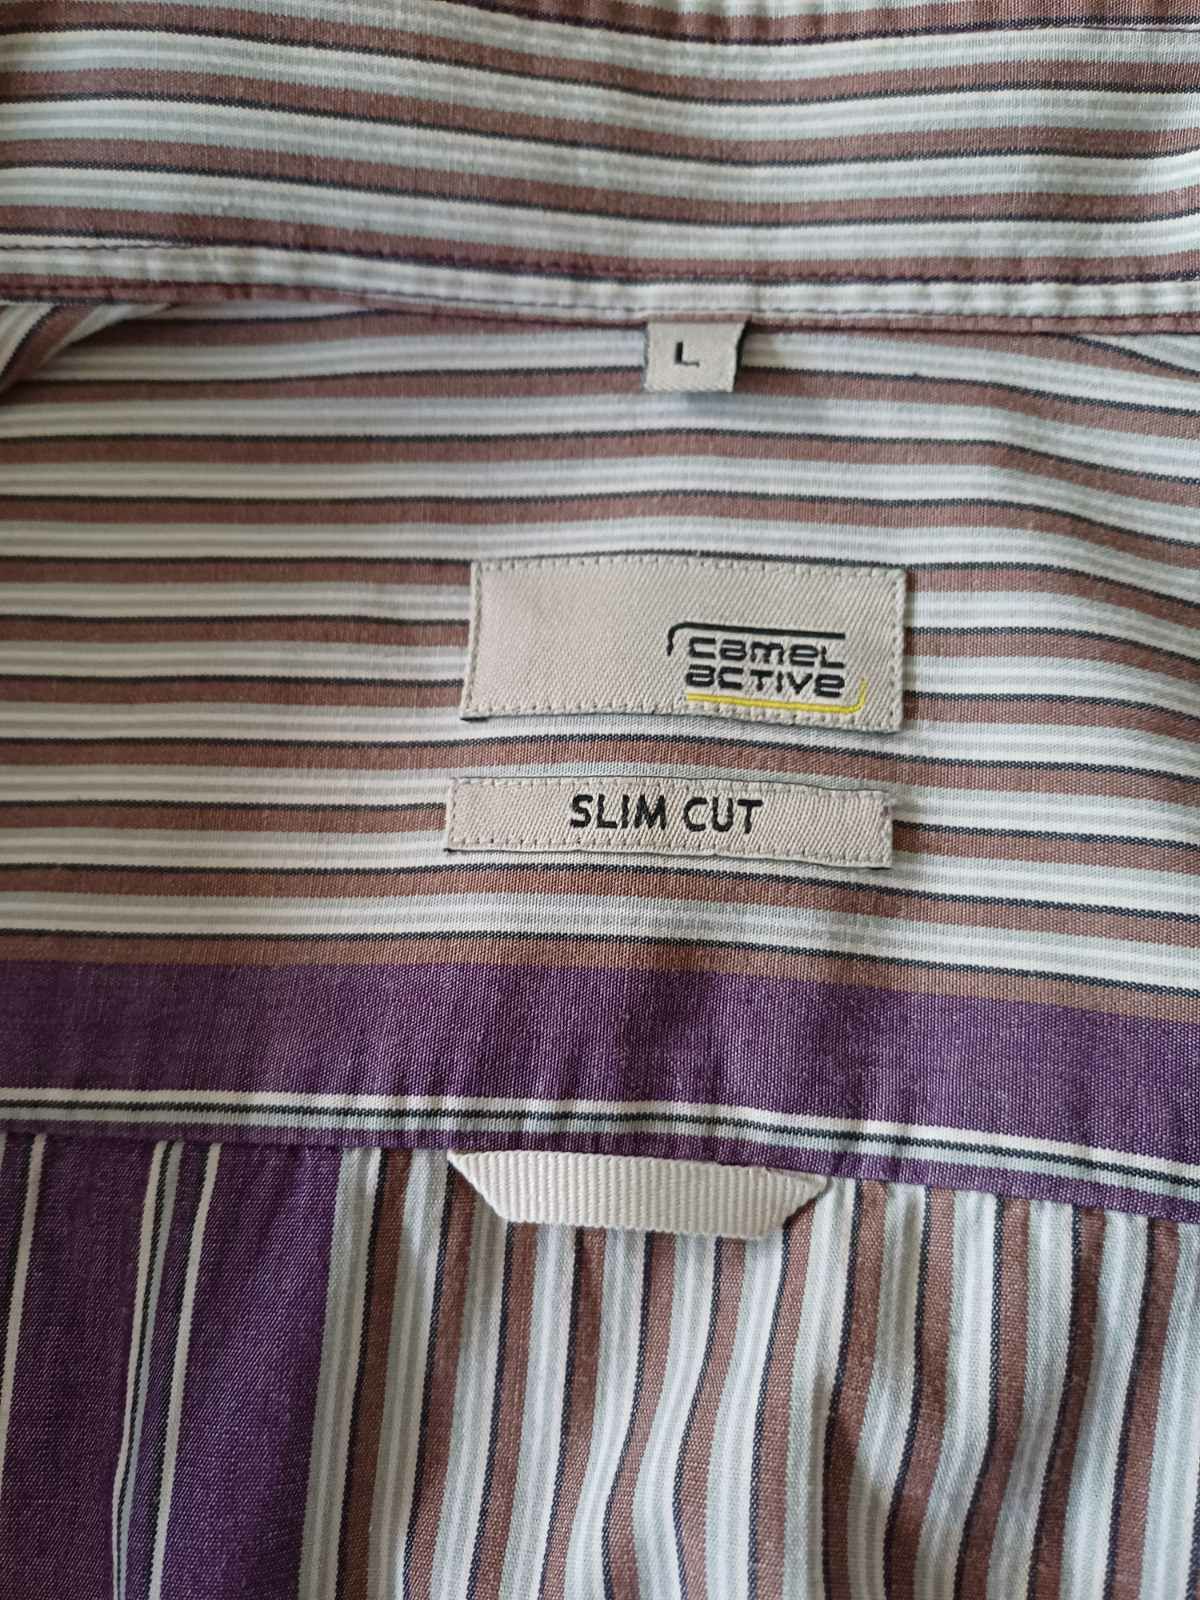 Koszula męska Camel Active Slim Cut rozm L/XL.